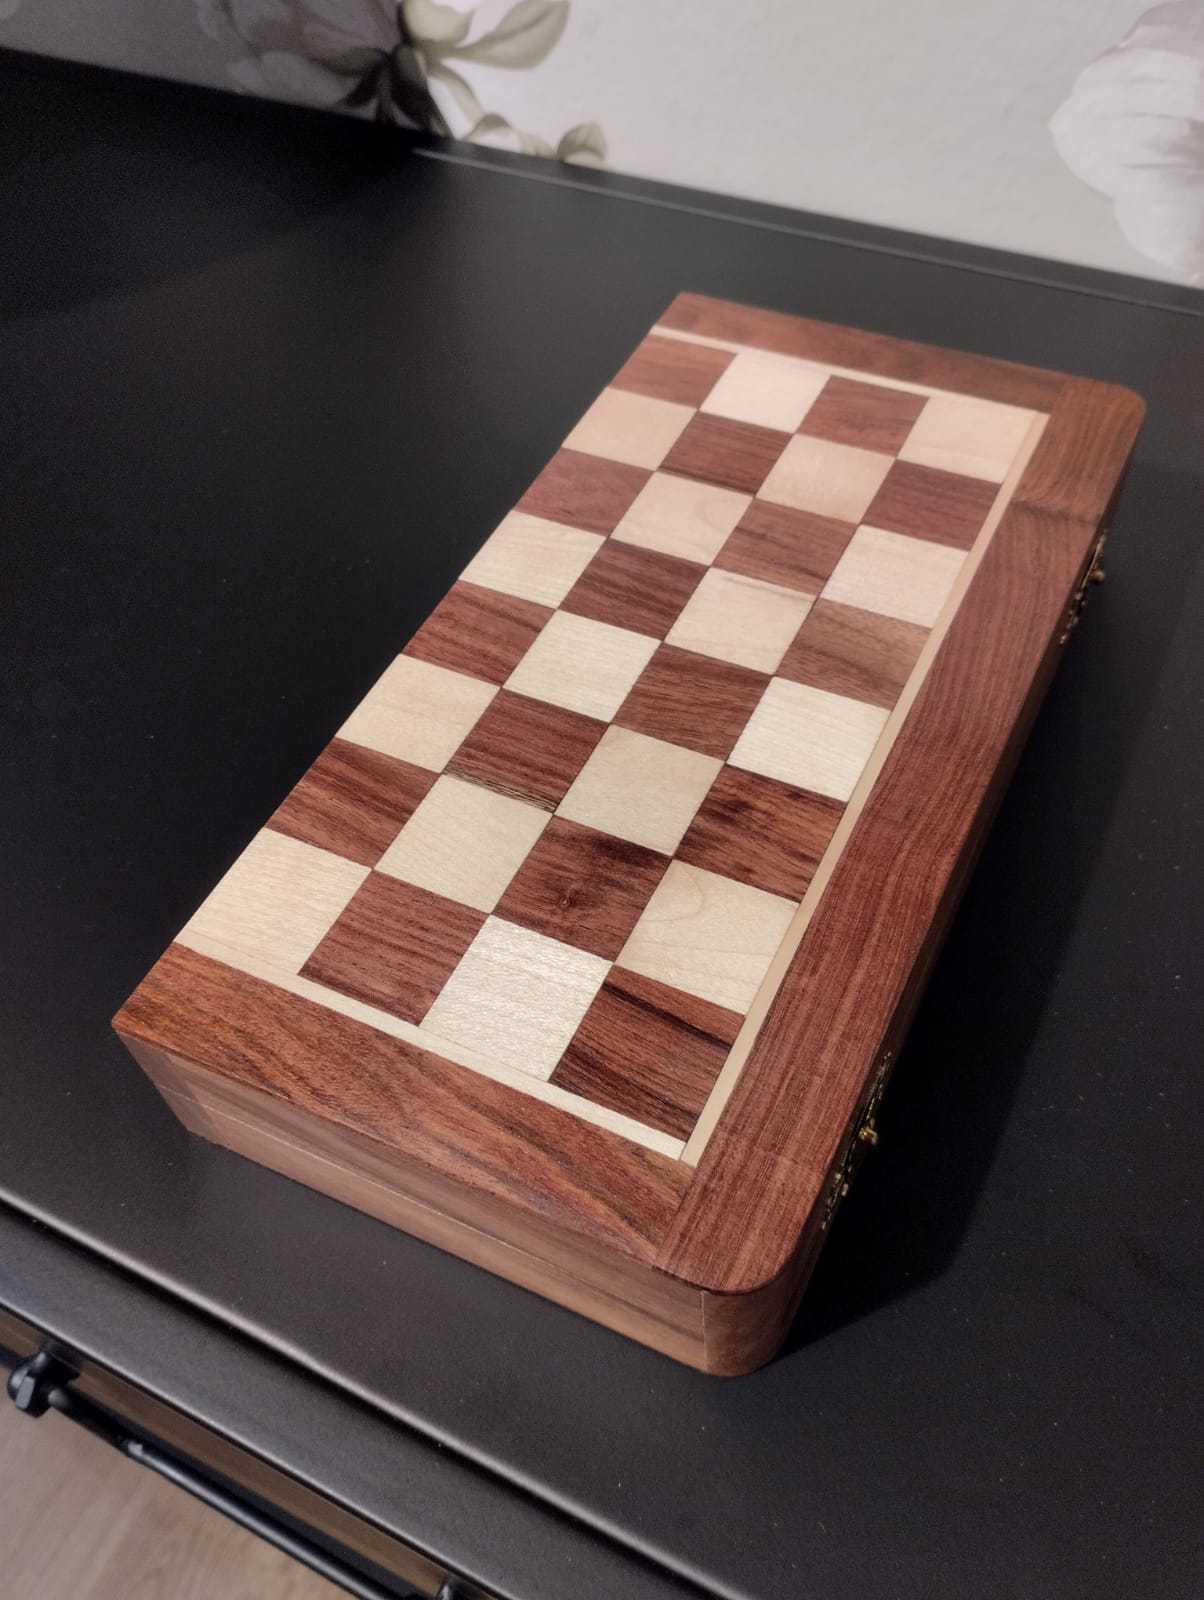 Schackbräde i trä med pjäser i brunt och vitt. Schackbrädet består av ett rutmönster med 64 omväxlande ljusa och mörka rutor. När du spelat klart fäller du ihop brädet som då bildar en låda där du förvarar pjäserna. Perfekt att ta med på resan eller förvara i bokhyllan.